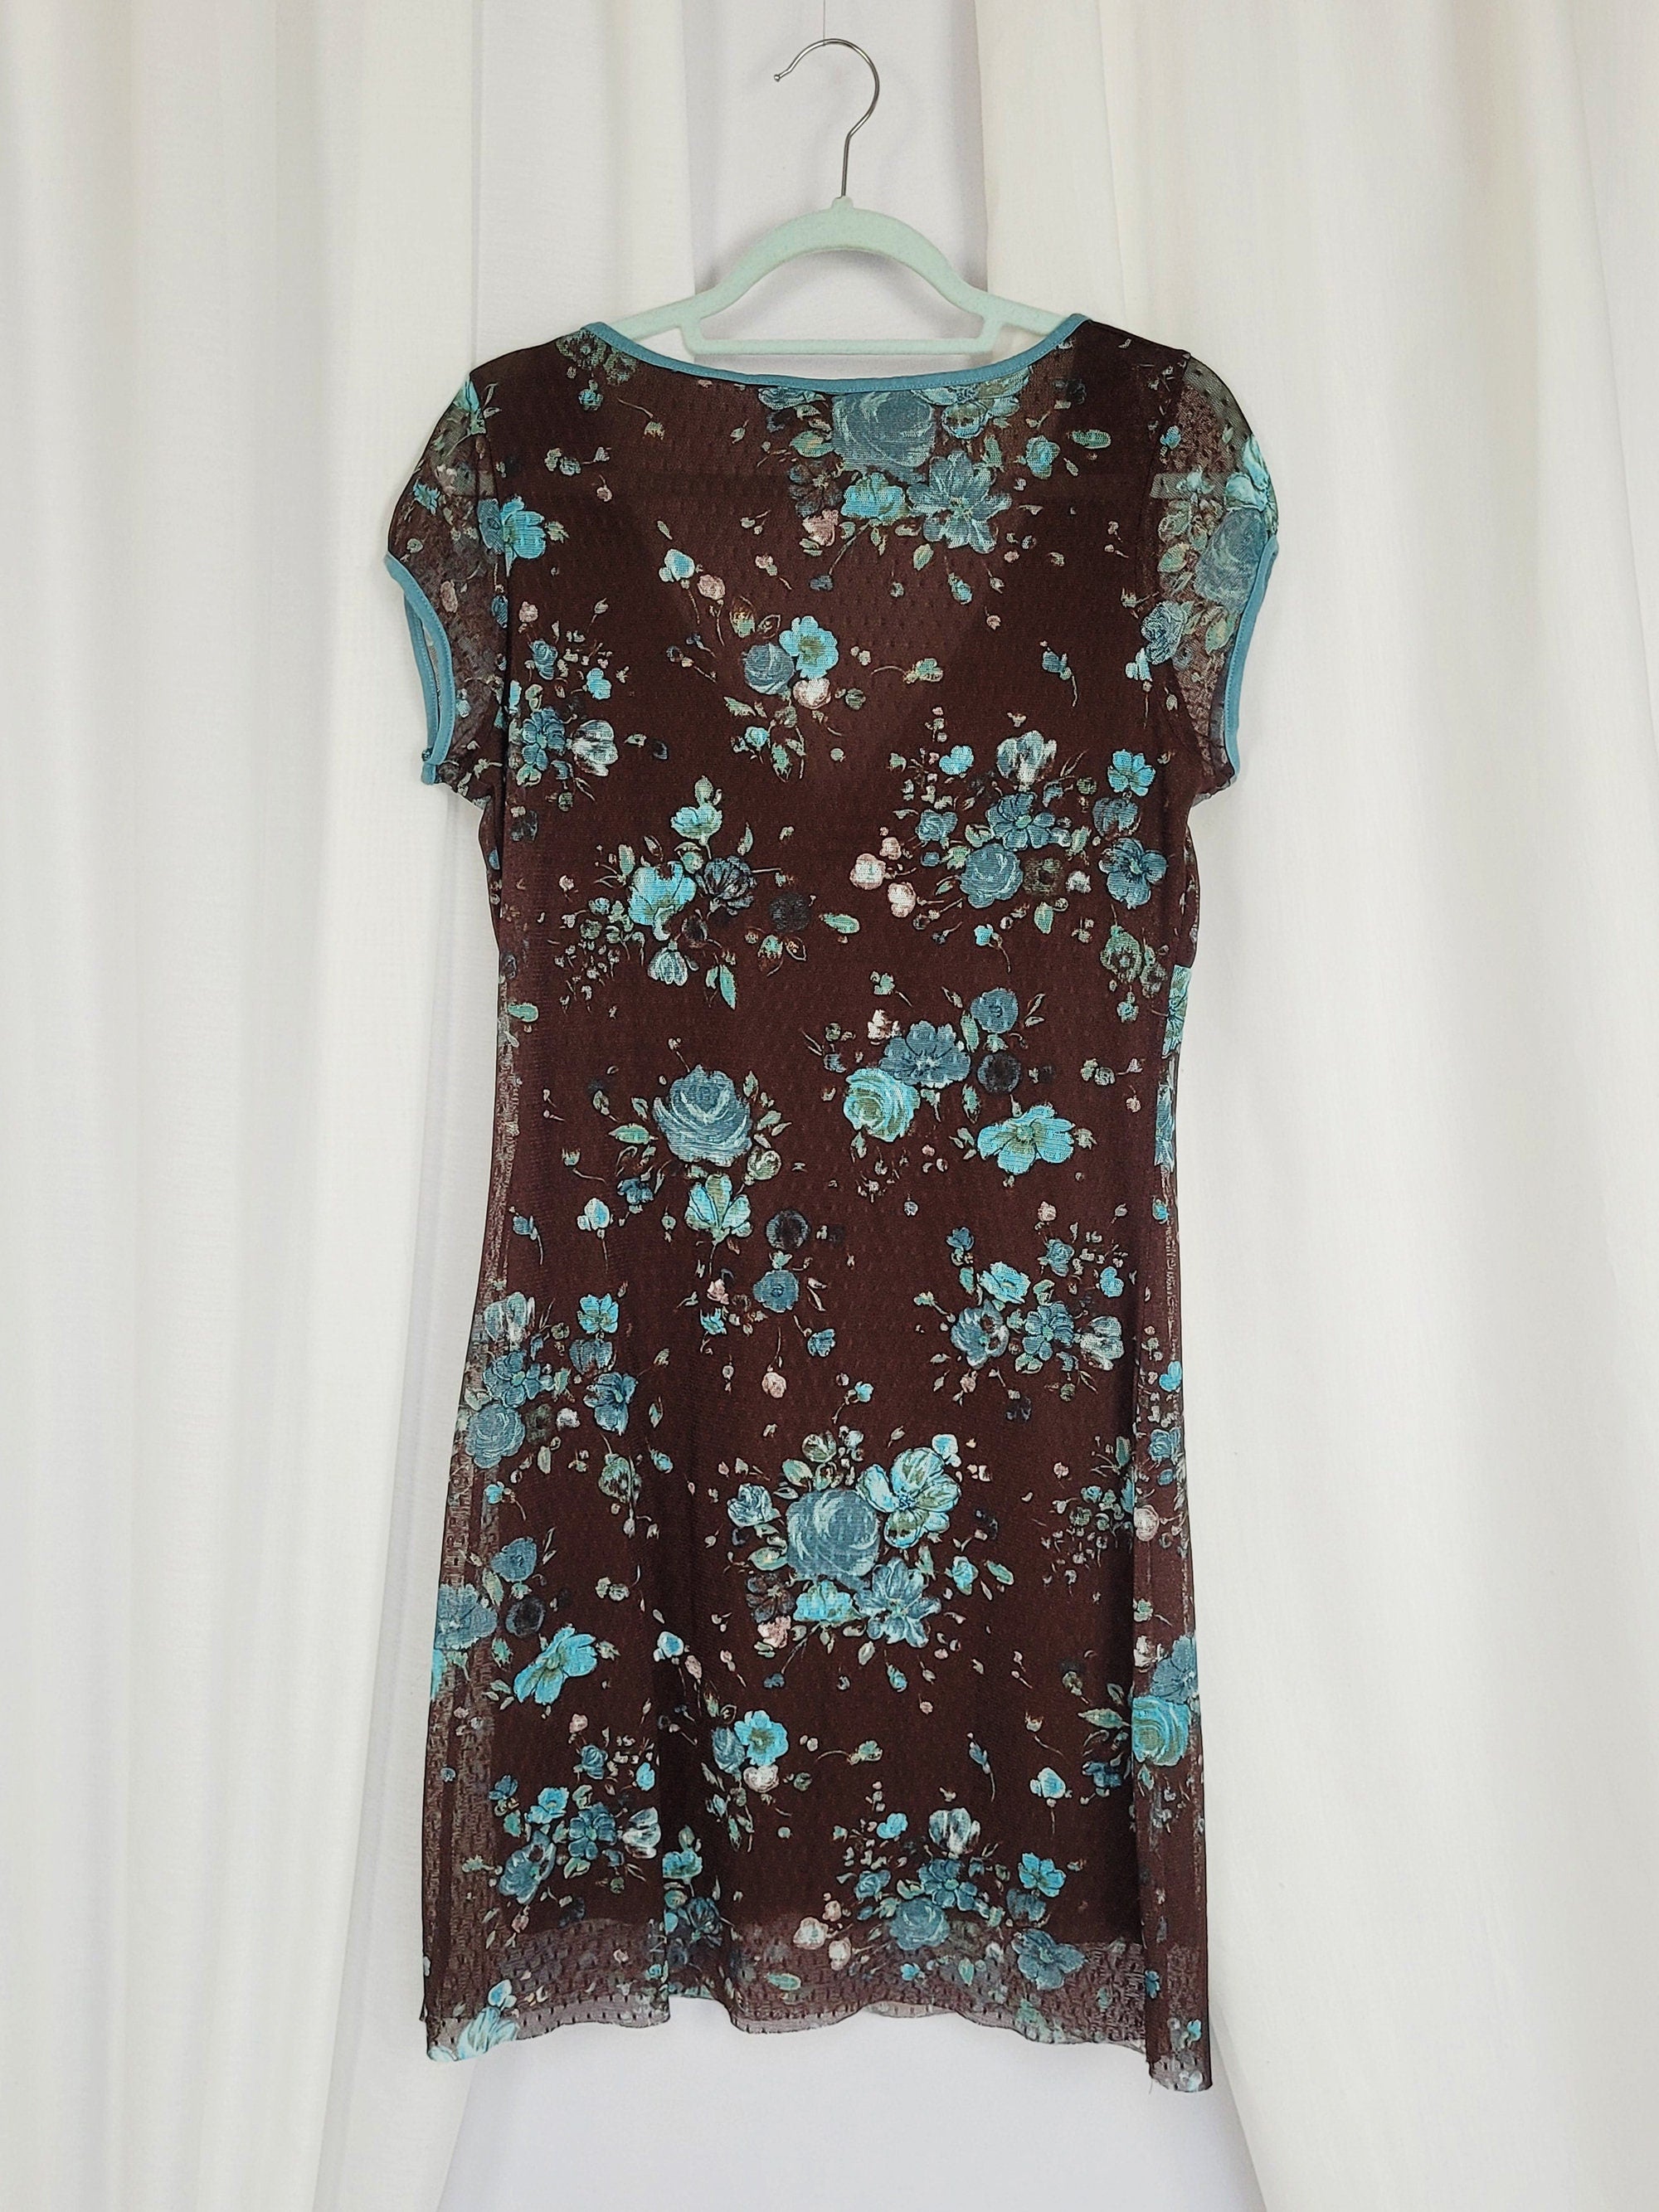 90s retro brown floral mesh minimalist summer mini dress